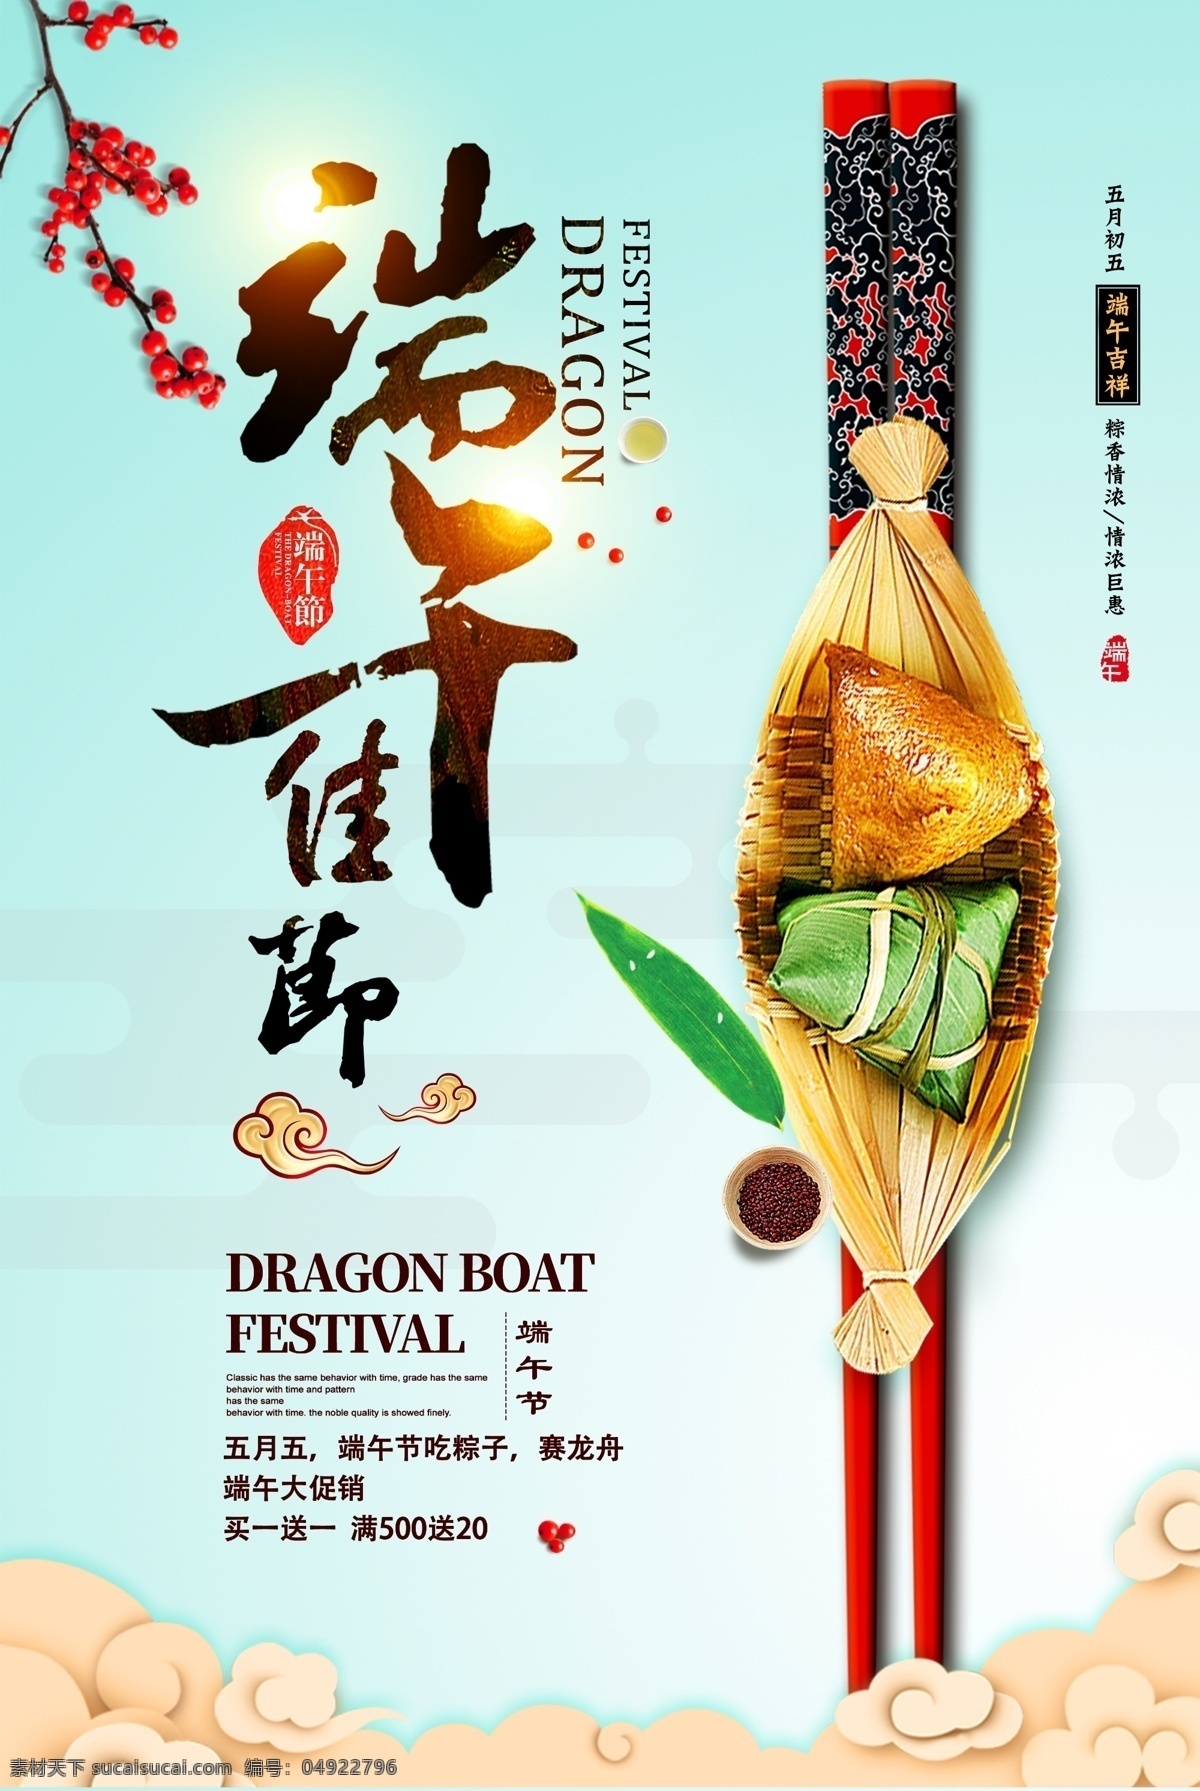 端午节海报 赛龙舟吃粽子 节日促销 活动宣传单 模版